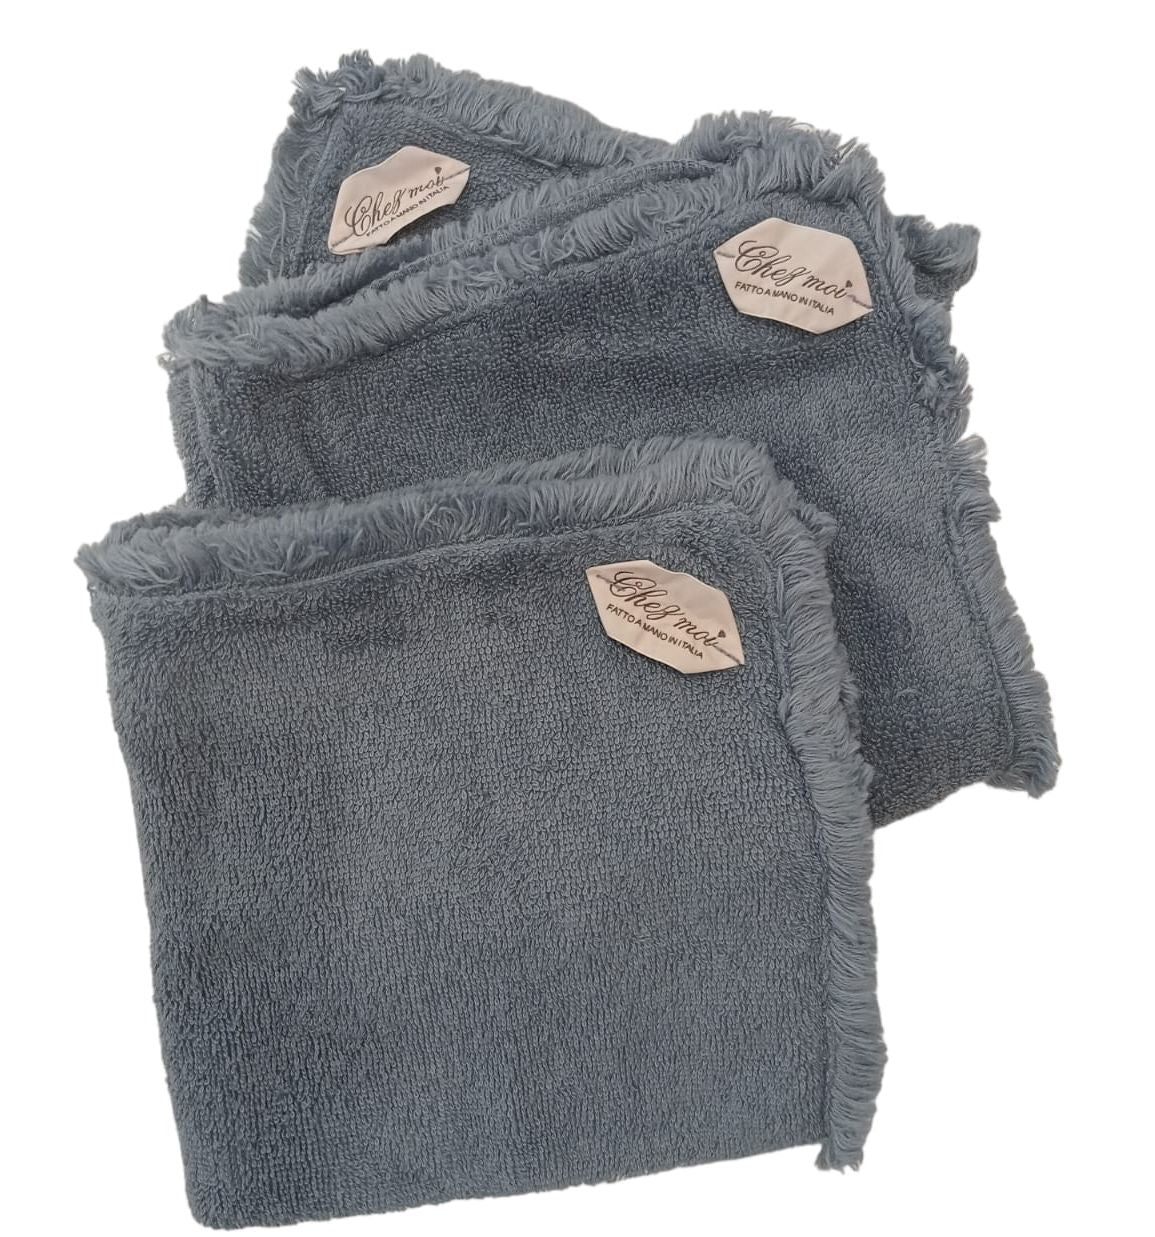 Lavette set da 3 asciugamani bagno con elegante sacchetto di lino, colore: Blu Denim, tessuti pregiati, 100% Made in Italy - Chez Moi